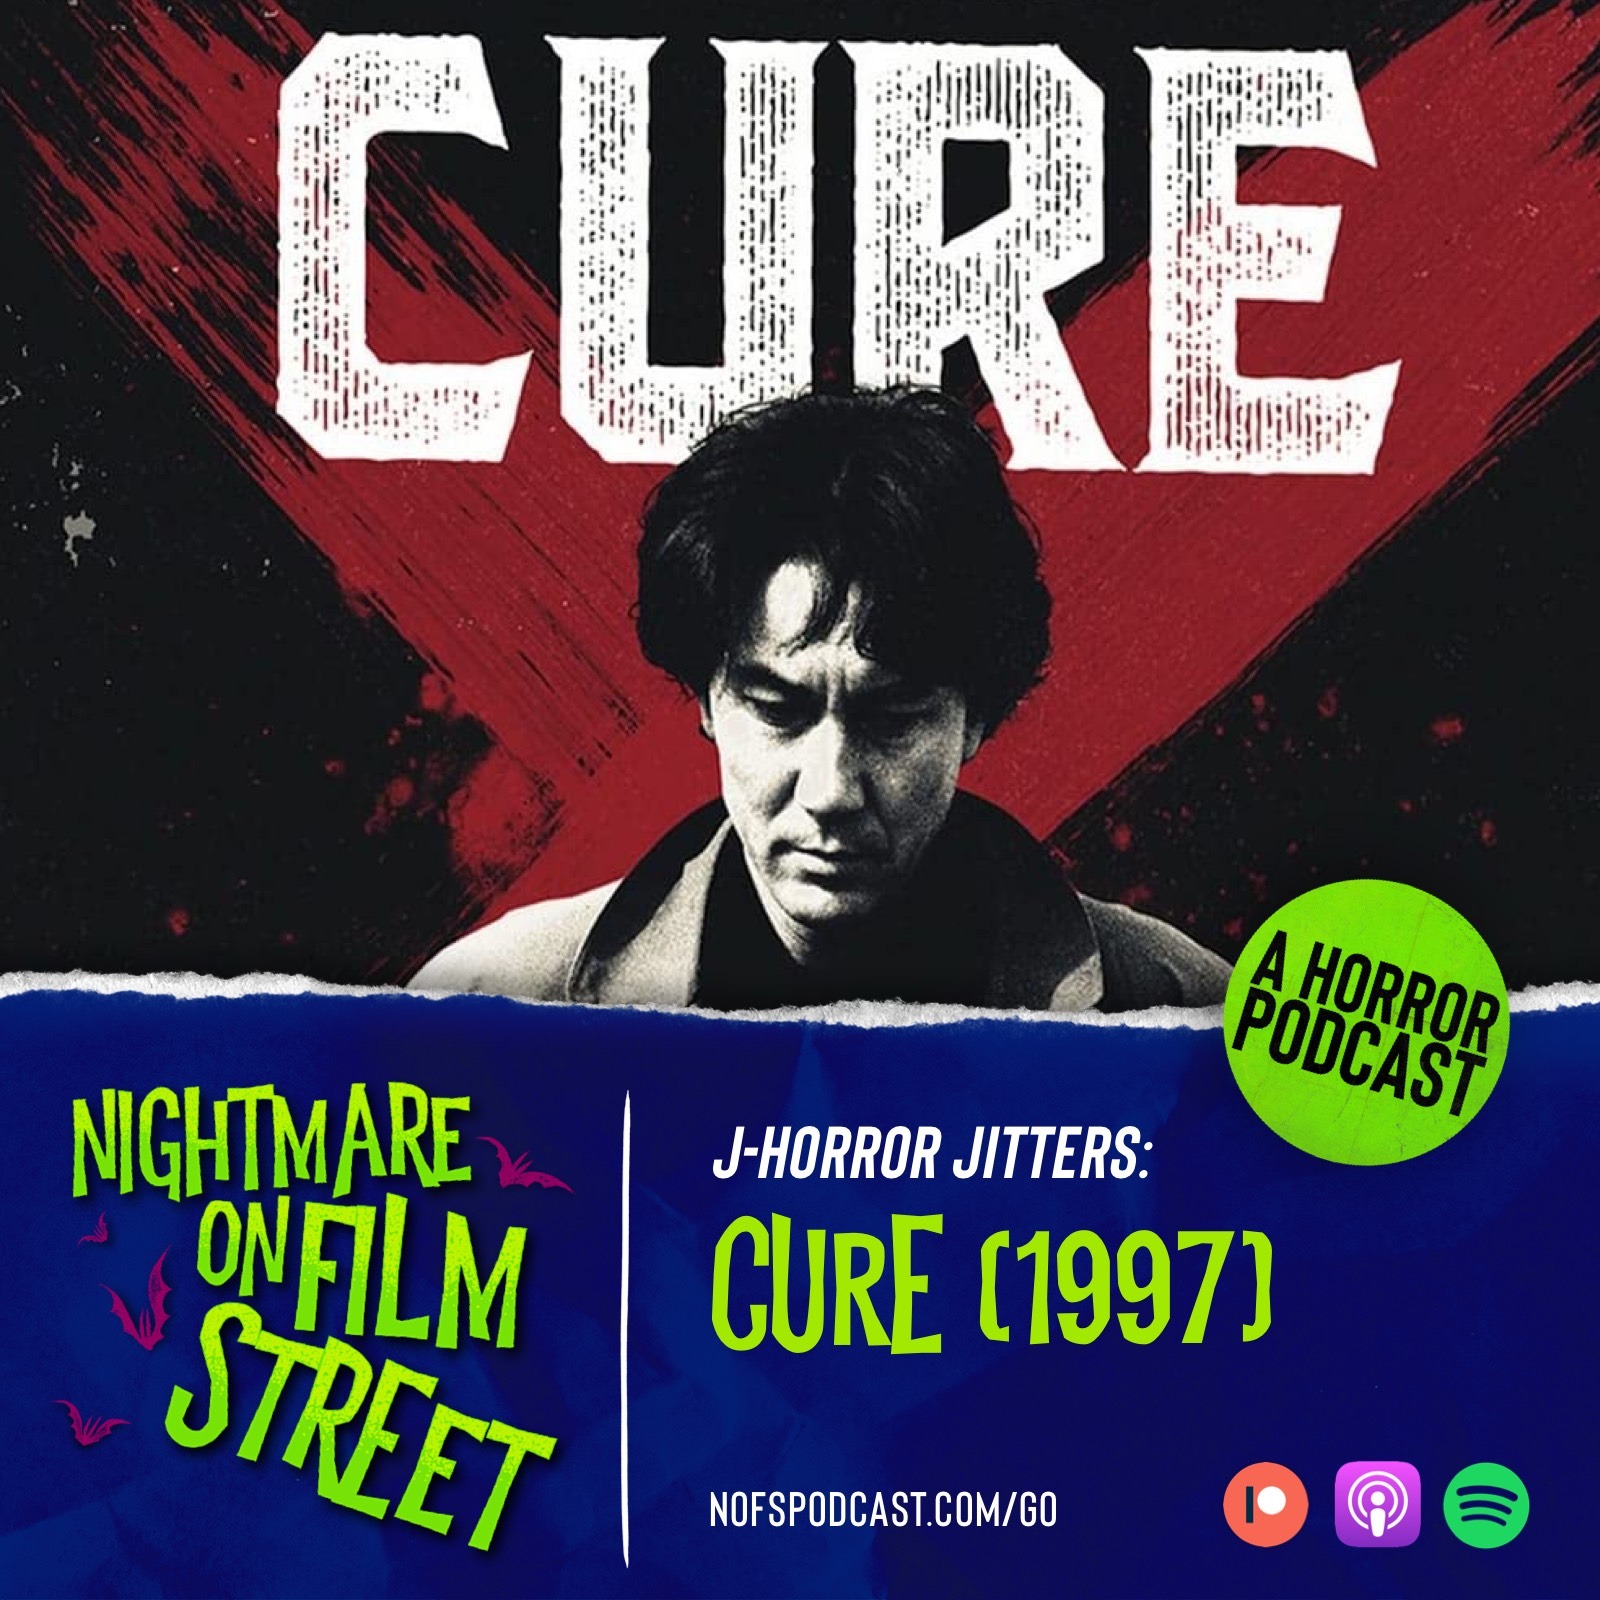 J-Horror Jitters: Cure (1997)